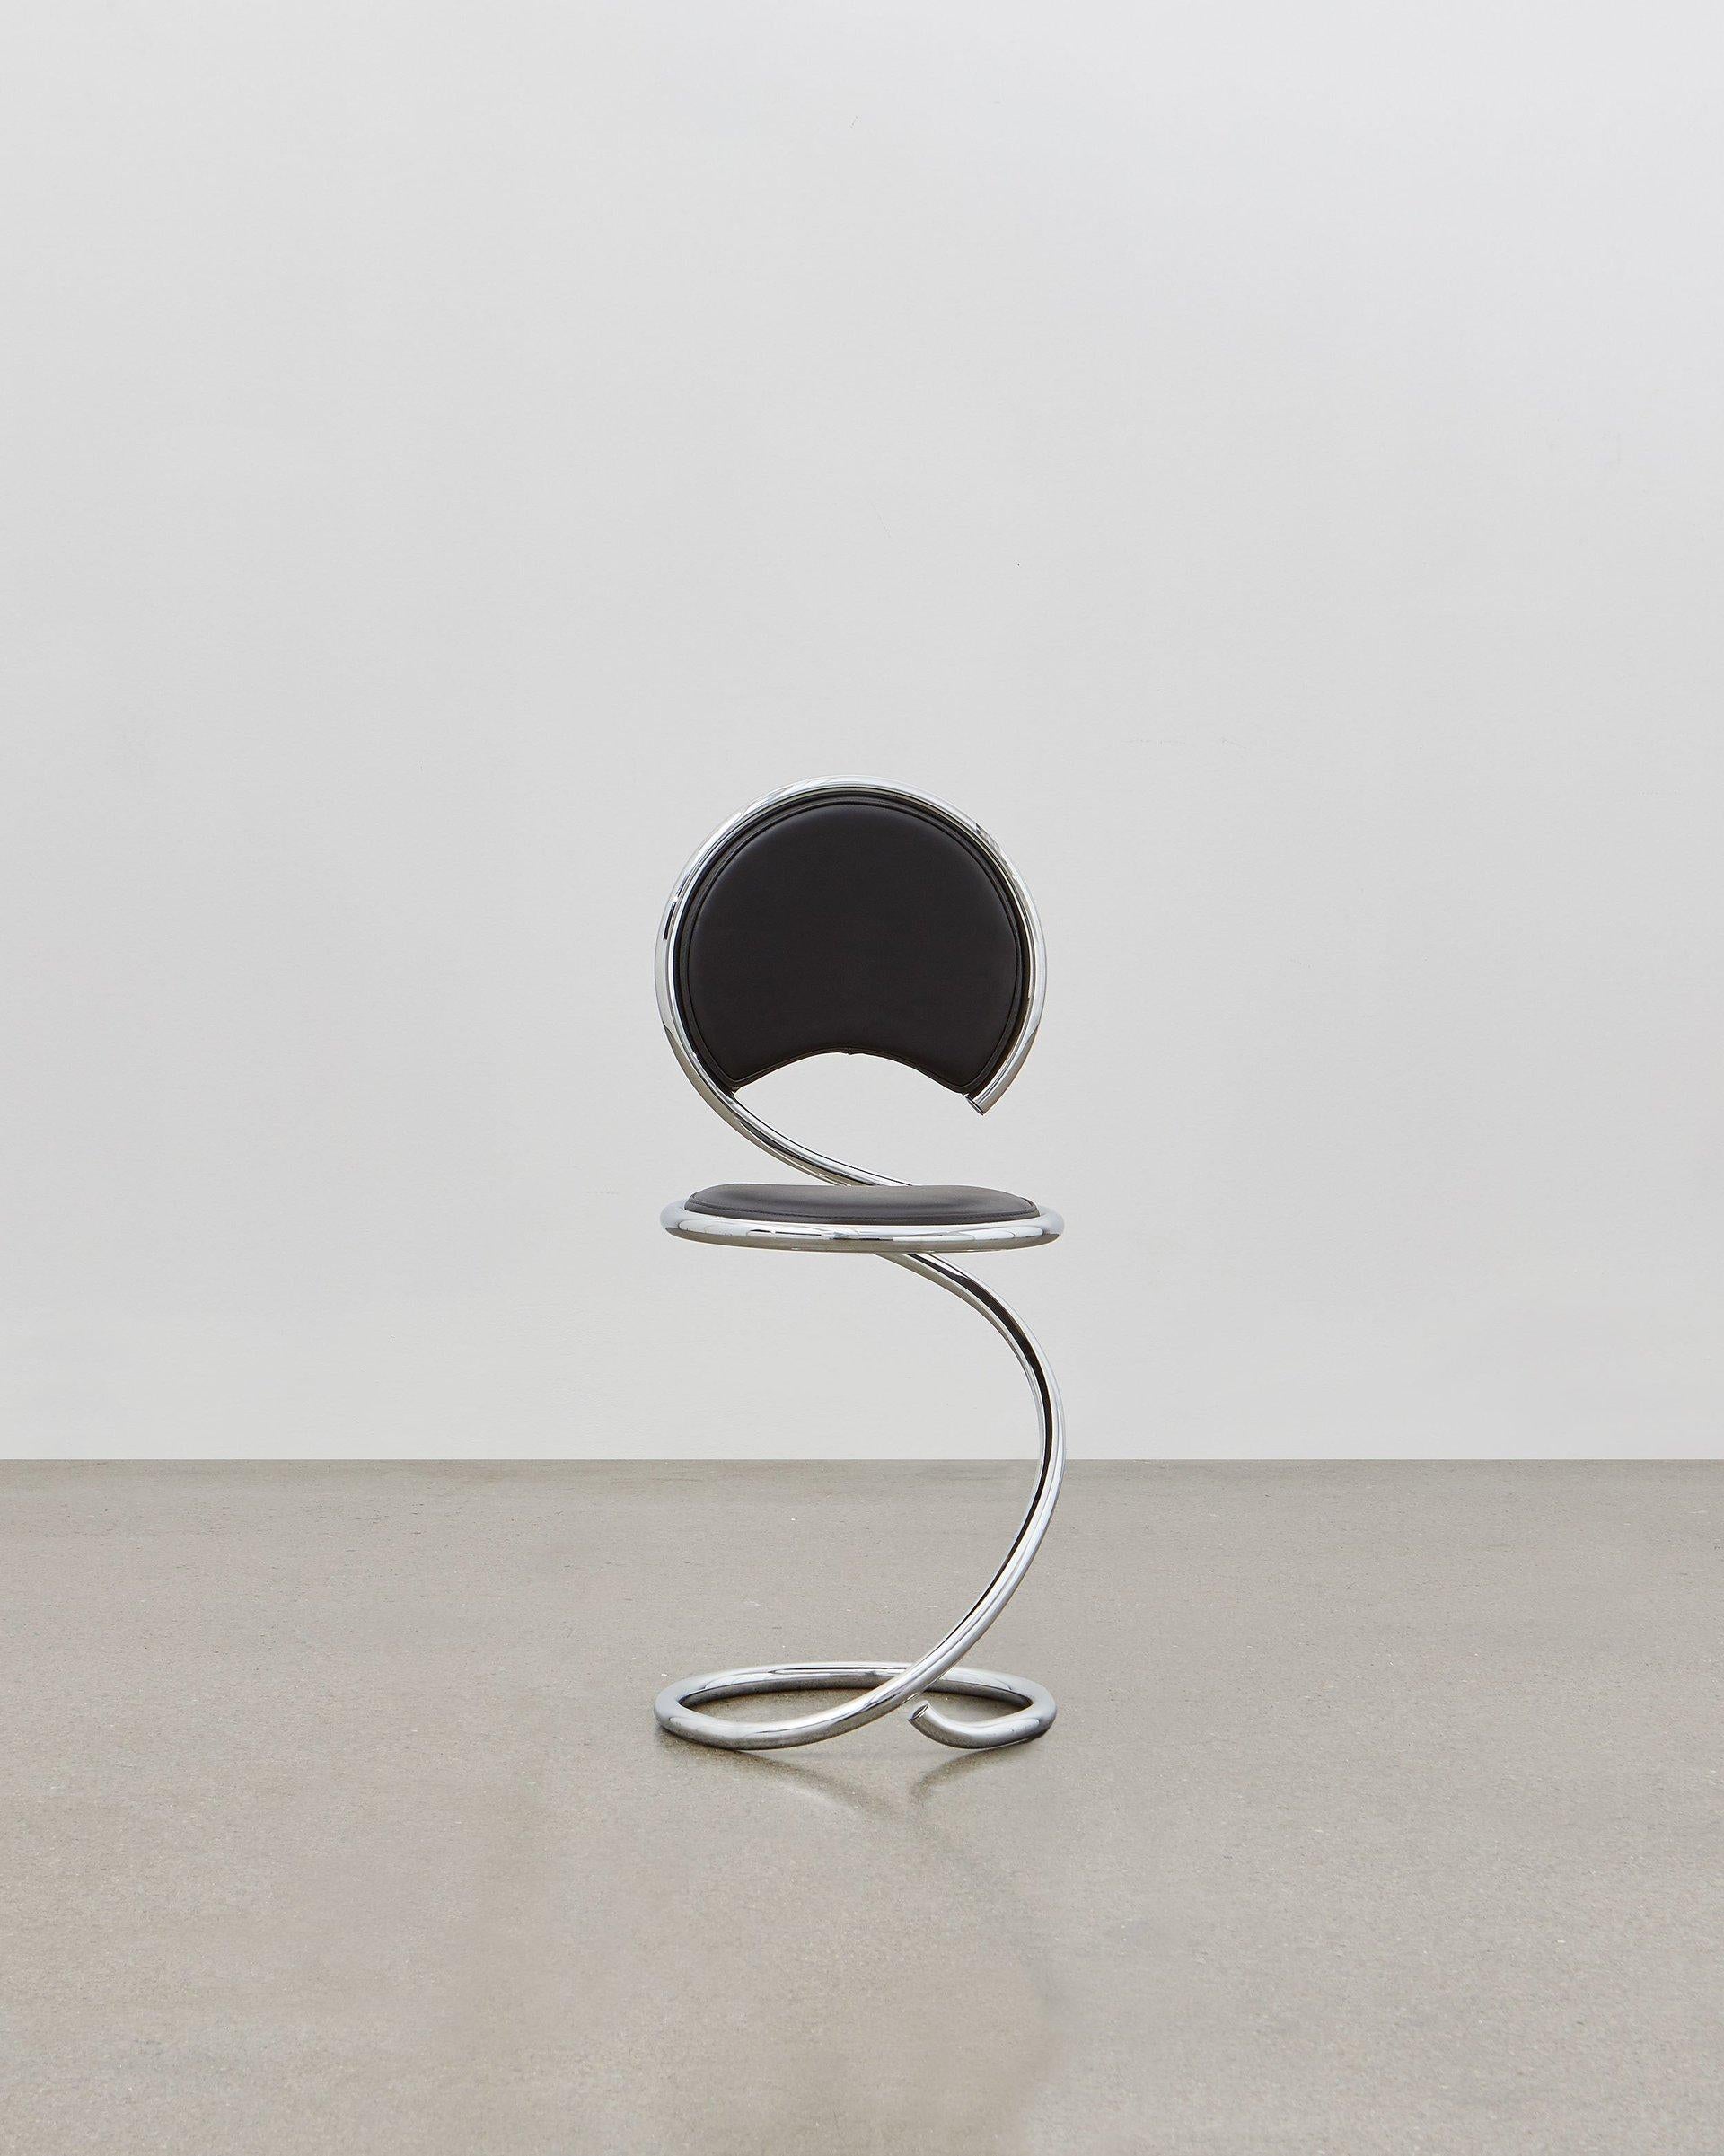 Die fließenden Linien des PH Snake Chairs in seinem Stahlrohrdesign sind vom starken und doch flexiblen Körper einer Schlange inspiriert. Es ist vielseitig einsetzbar und passt in jeden Raum zu Hause, in der Wohnung, im Büro, mit einer Funktion oder